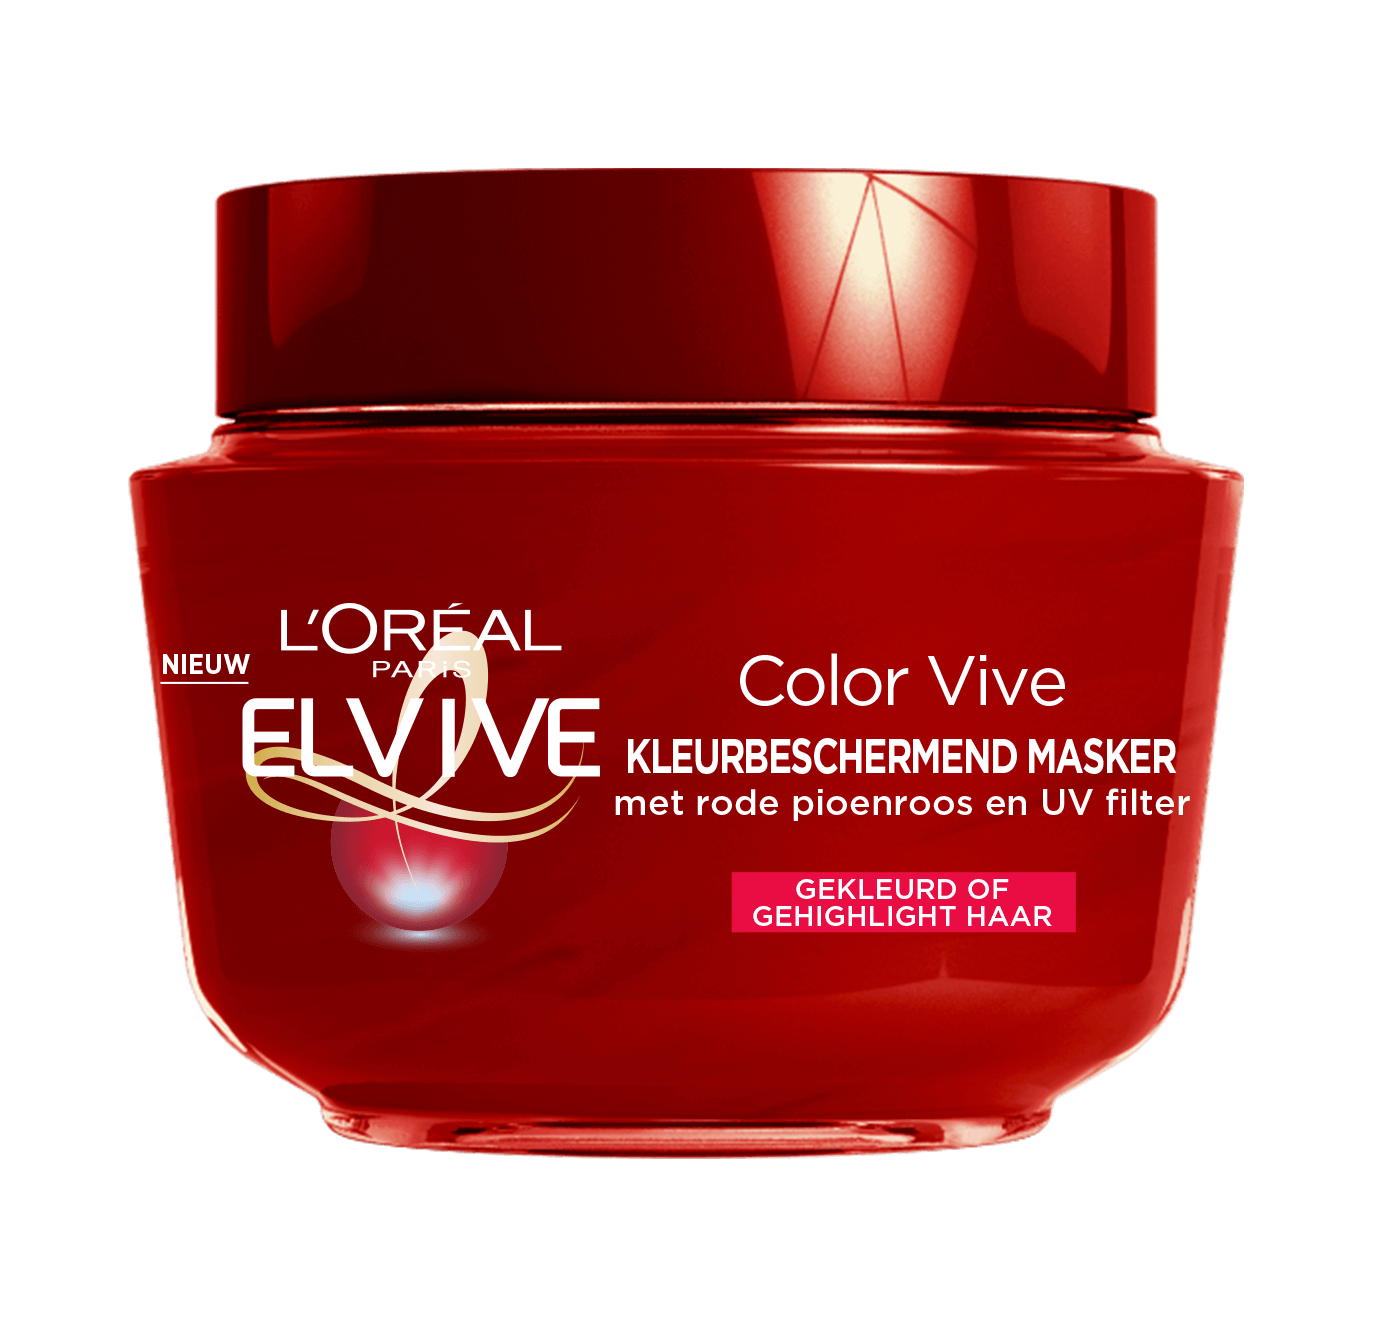 Bemiddelaar Achtervoegsel lint Elvive Color Vive Beschermend Masker voor geverfd haar| L'Oréal Paris